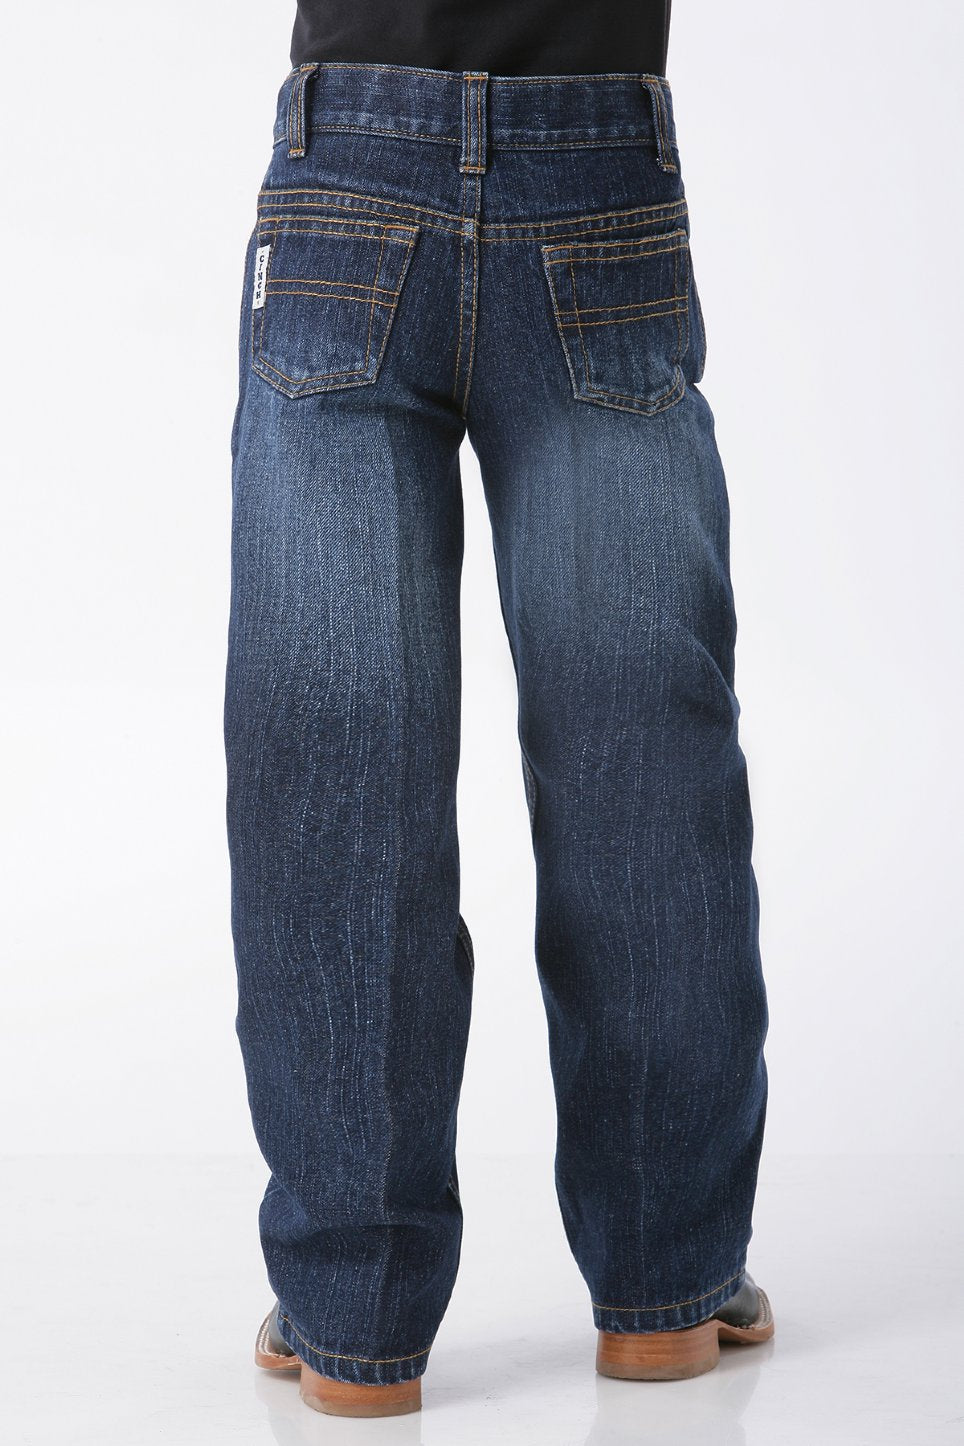 Cinch Boy's White Label Dark Wash Jeans